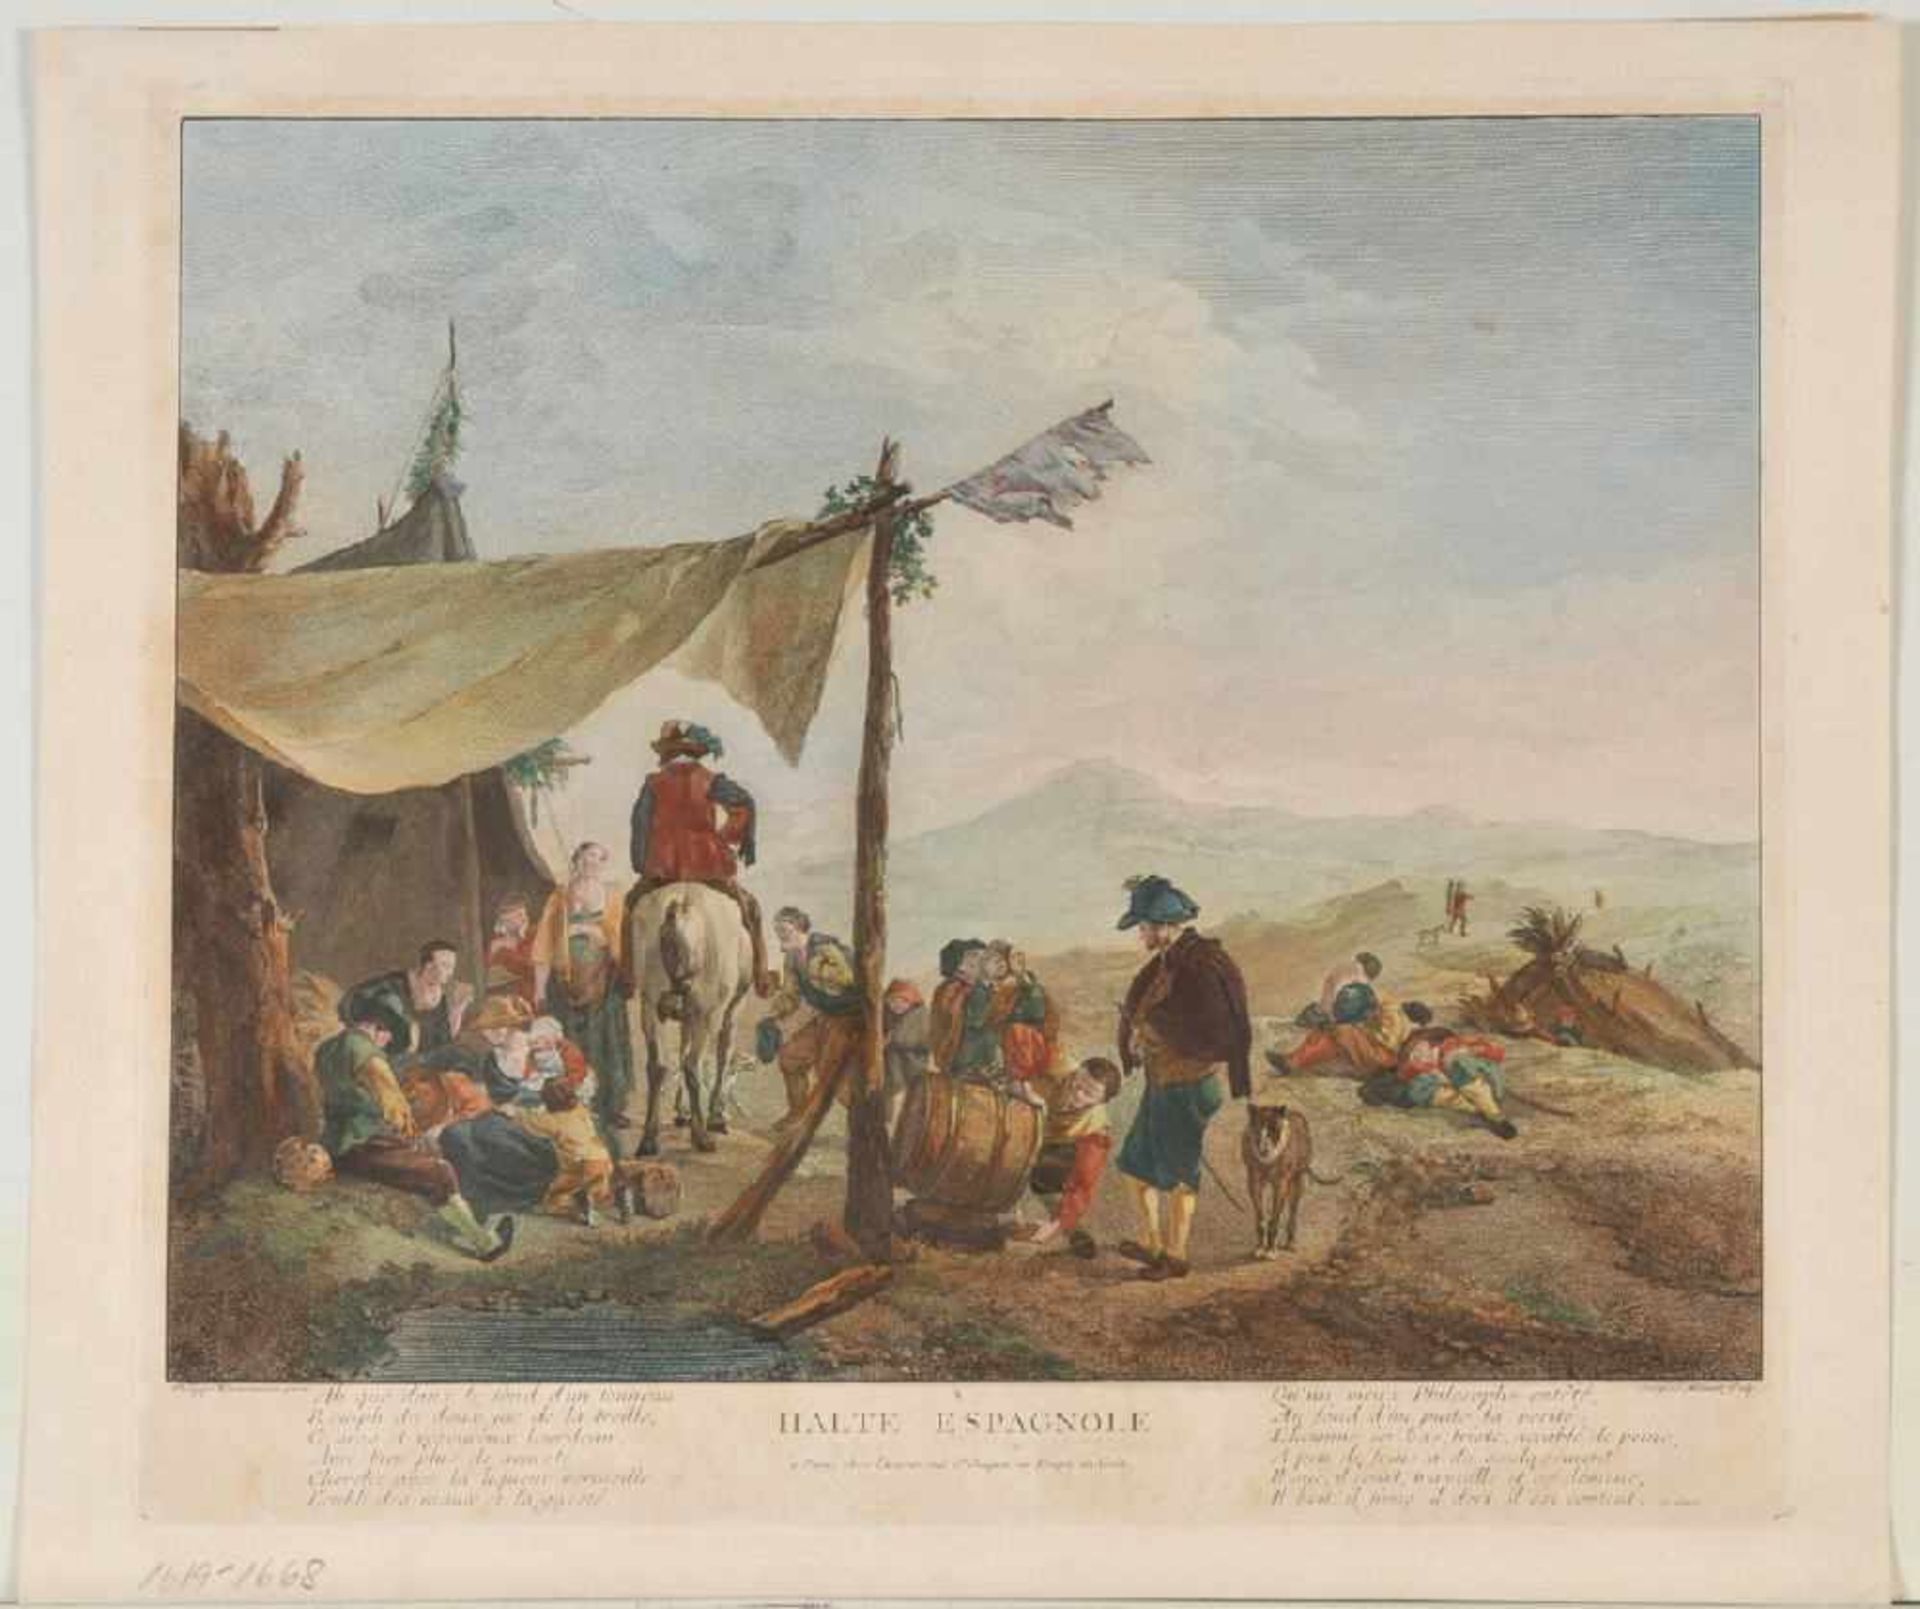 Aliamet, Jacques, 1726 Abbeville - 1788 ParisKupferstich, handcolor., 31 x 39 cm, betit. " Halte